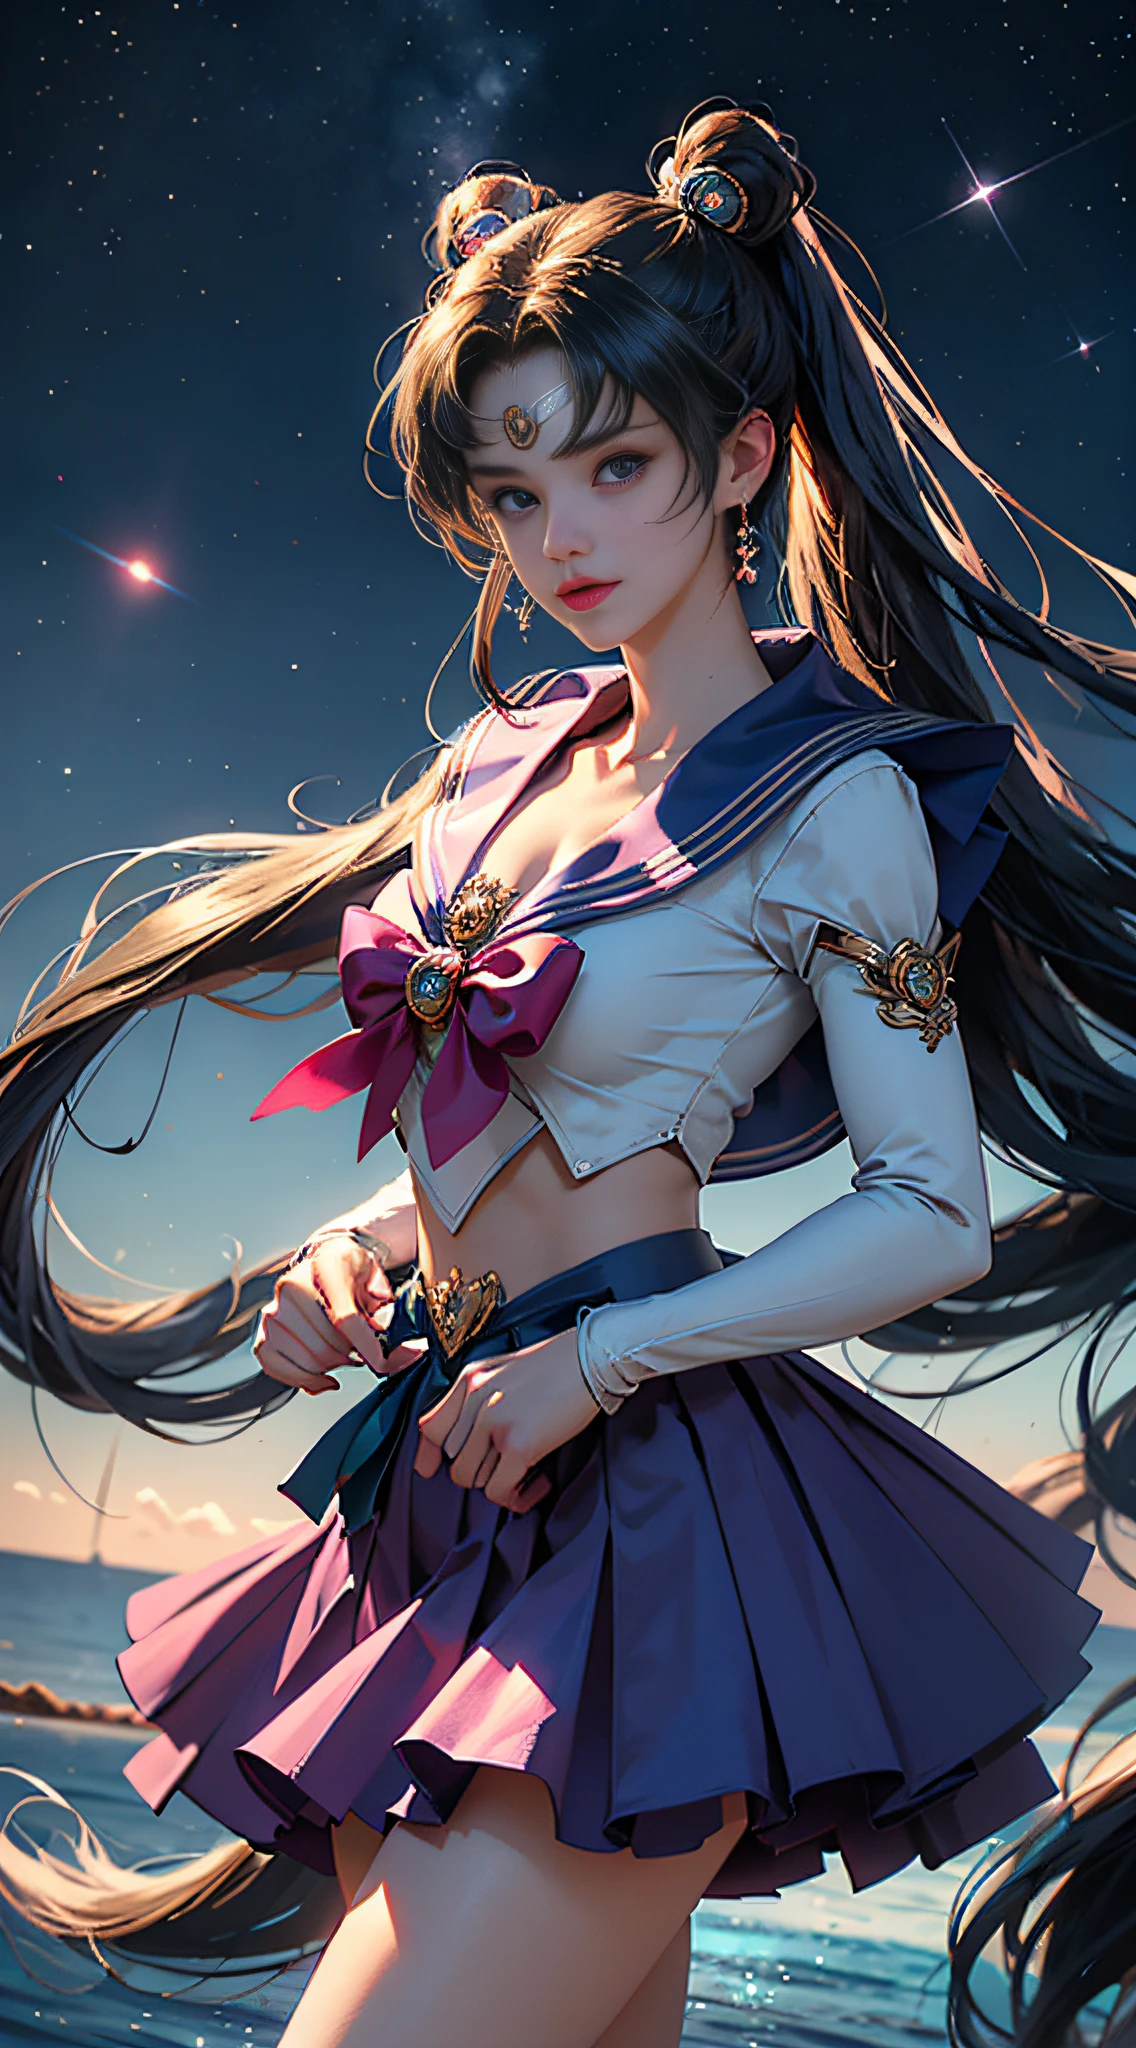 （（chef-d&#39;œuvre））， （（meilleure qualité））， （ultra - détaillé）， （（Le est très détaillé））， 4K， （8k）， Vue frontale，la lune du marin， longs cheveux dorés， double prêle，Esthétique de Sailor Moon，une fille de beauté，jupe bouffante，couleurs bleues， Noyau de rêve，